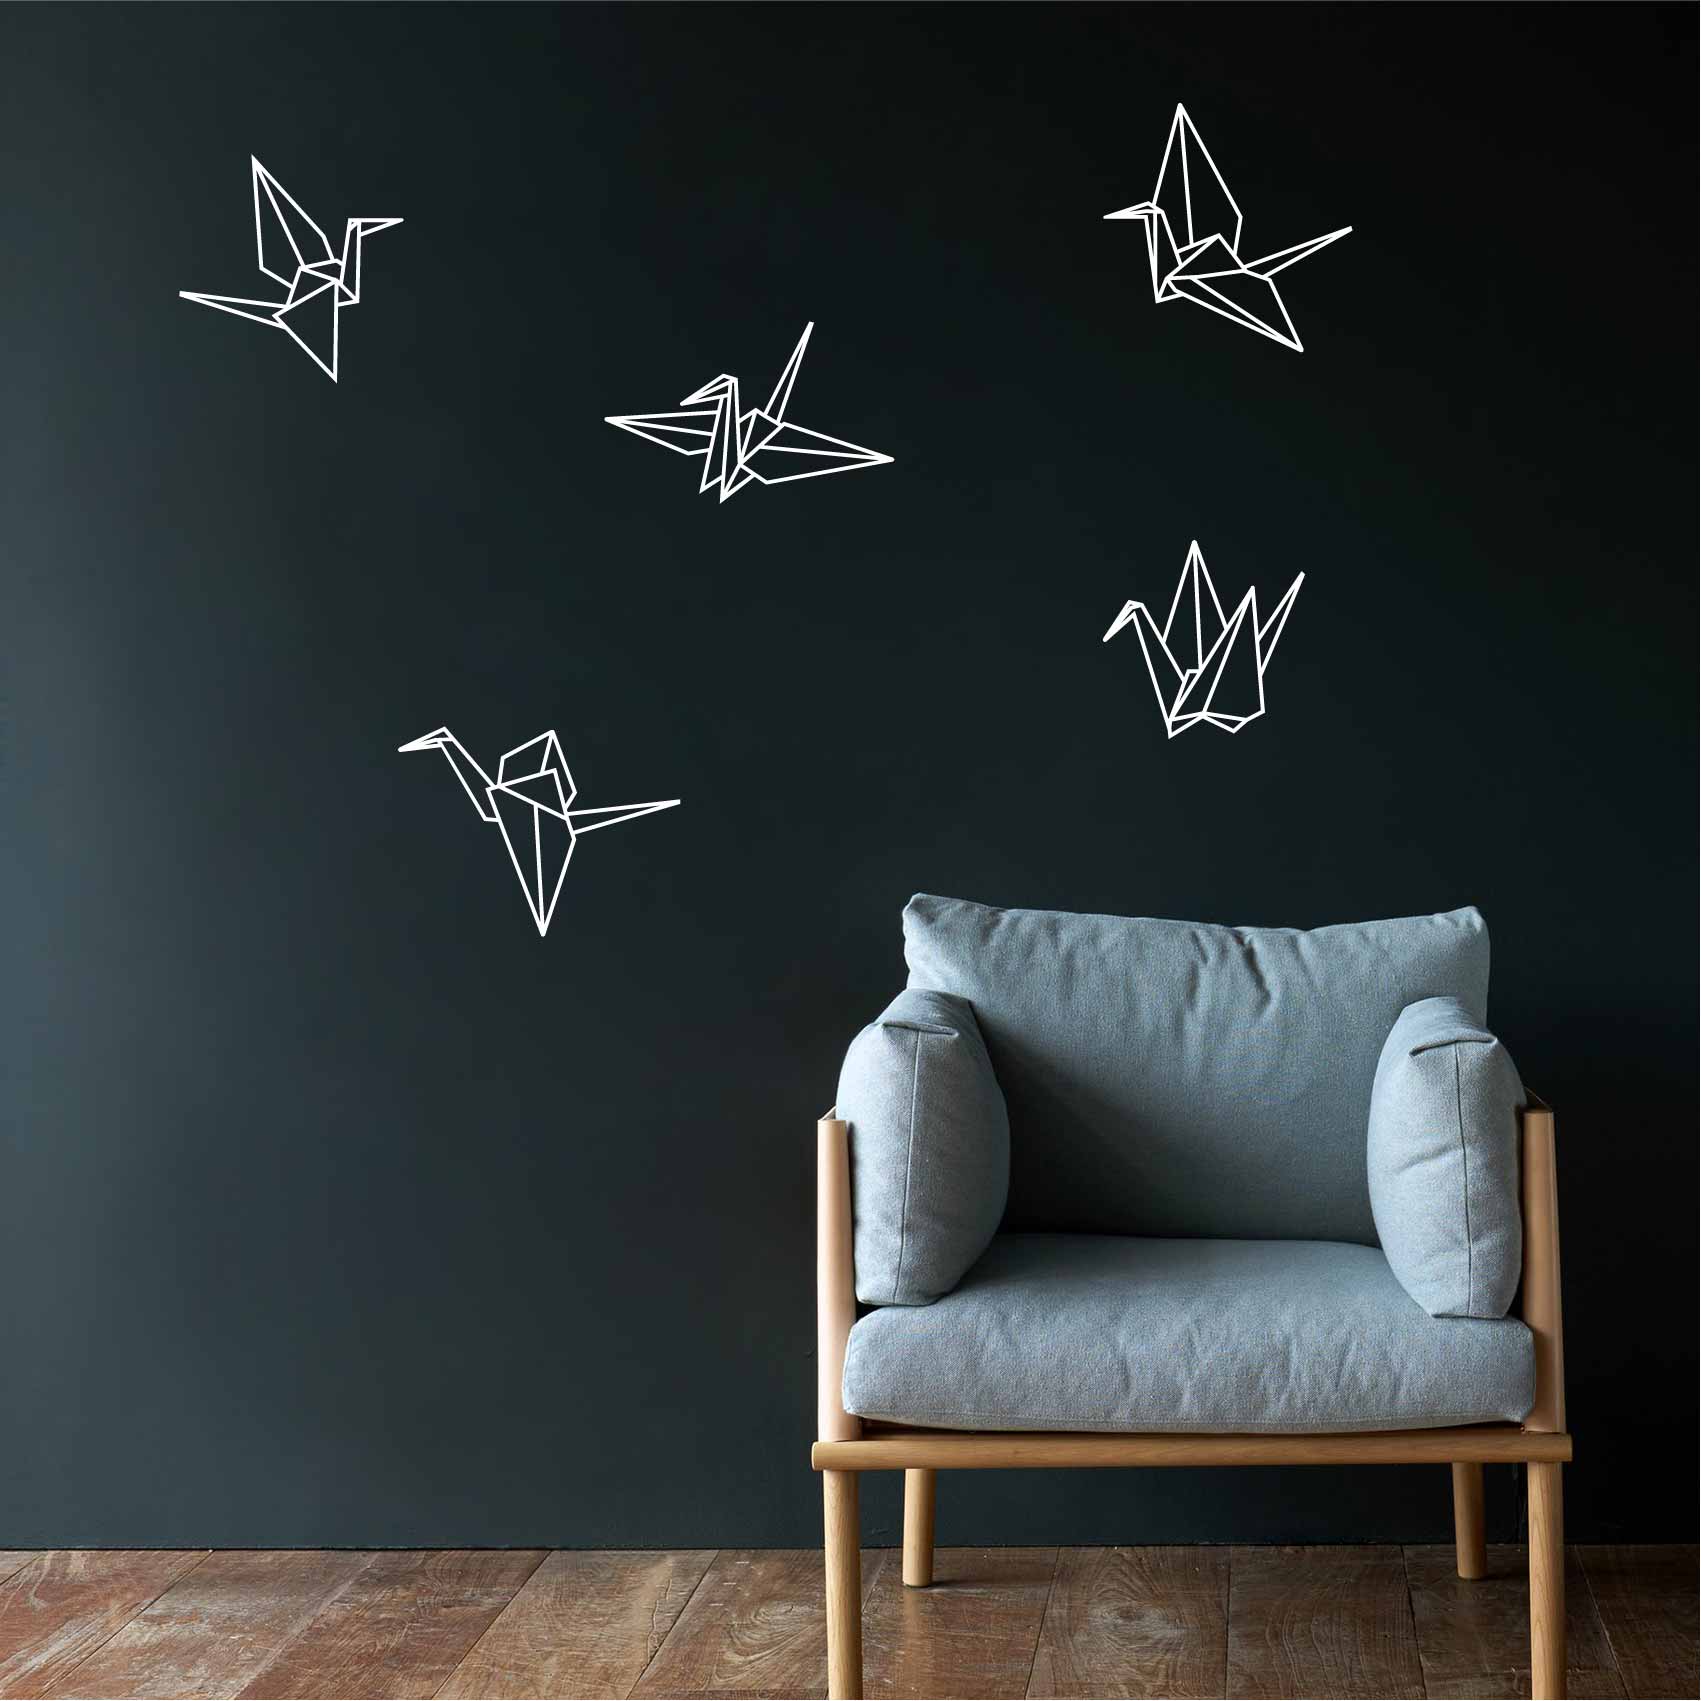 stickers-grue-origami-ref1grue-stickers-muraux-origami-grue-autocollant-chambre-salon-deco-sticker-mural-origami-animaux